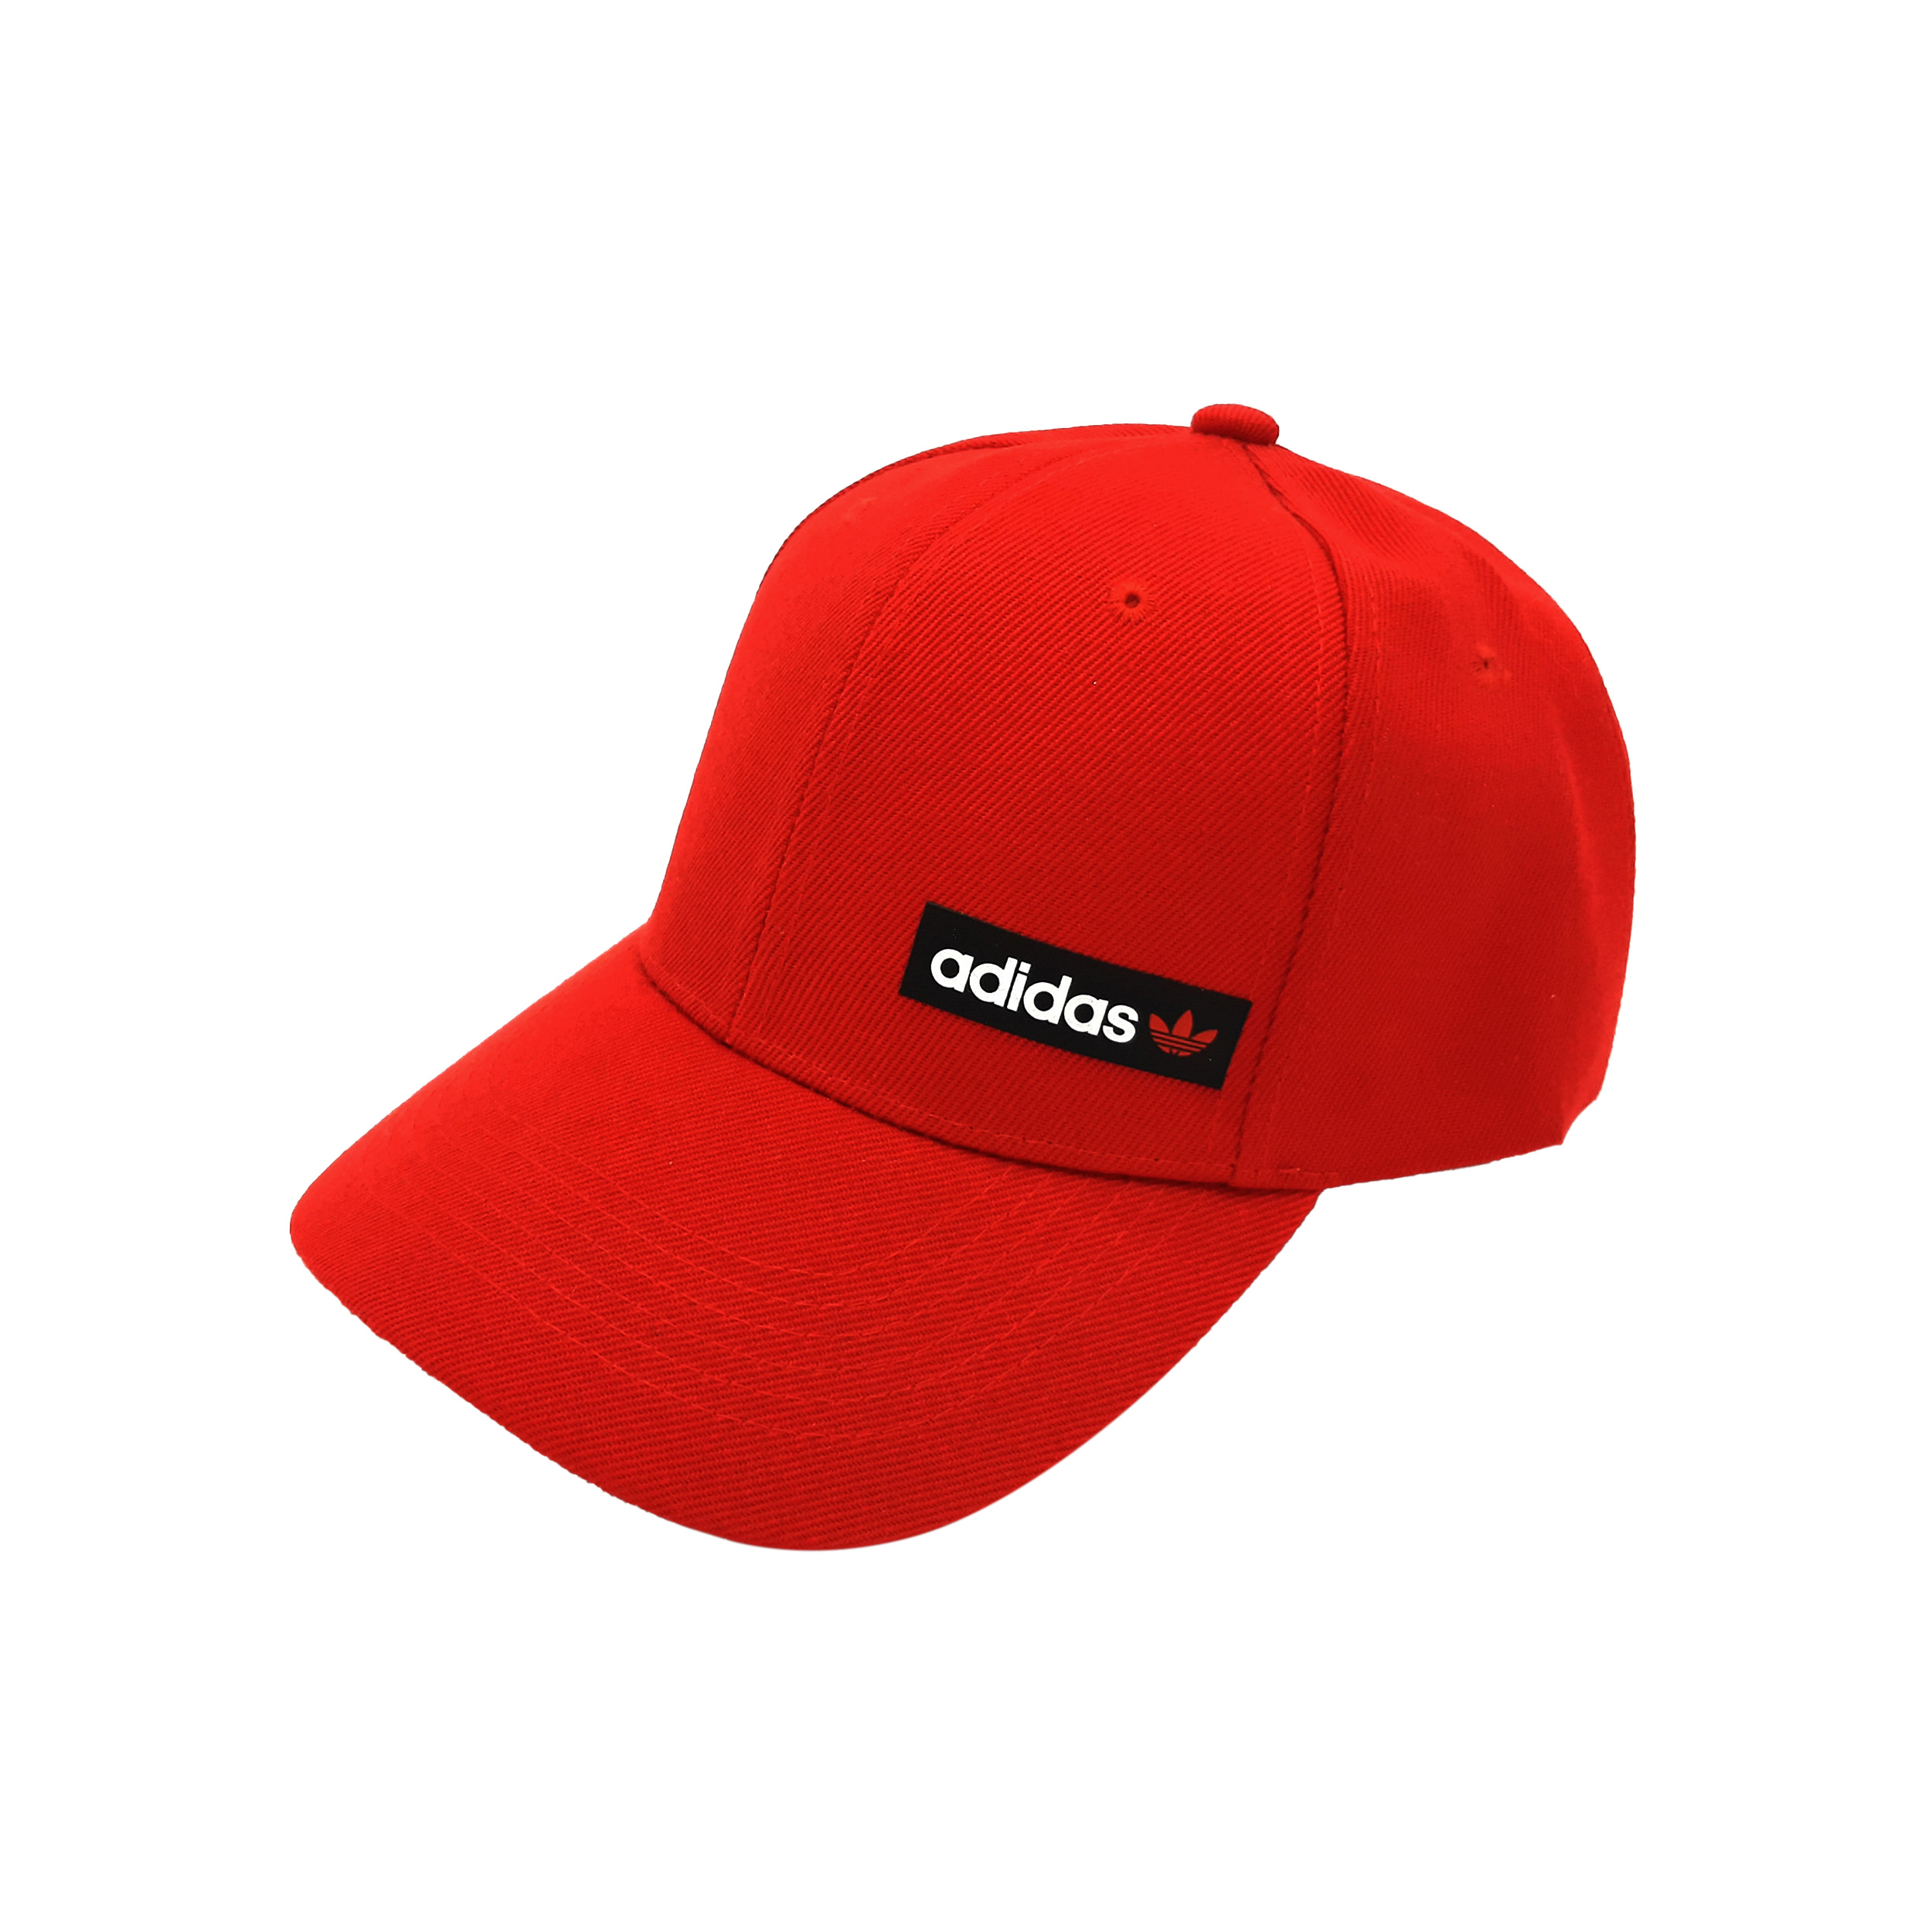 نکته خرید - قیمت روز کلاه کپ مدل بیسبالی ساده خرید